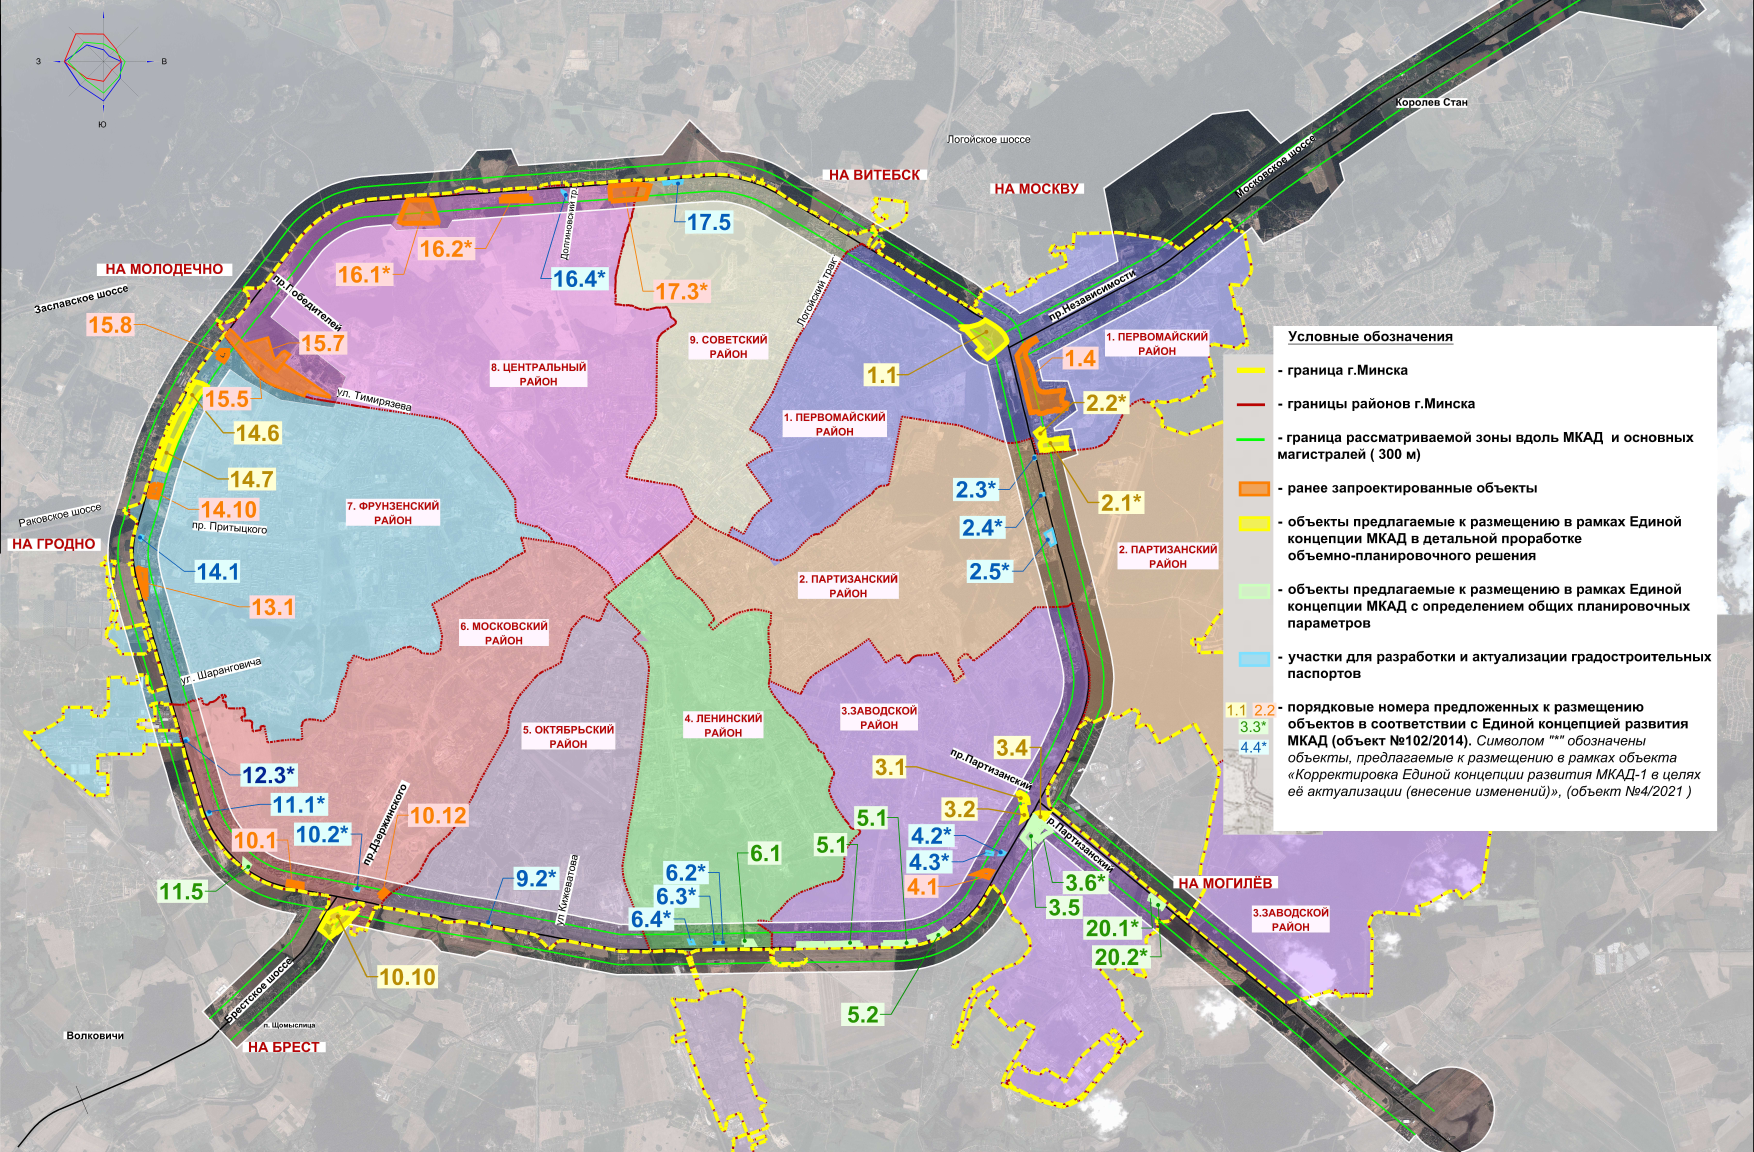 Схема размещения объектов на территории города Минска